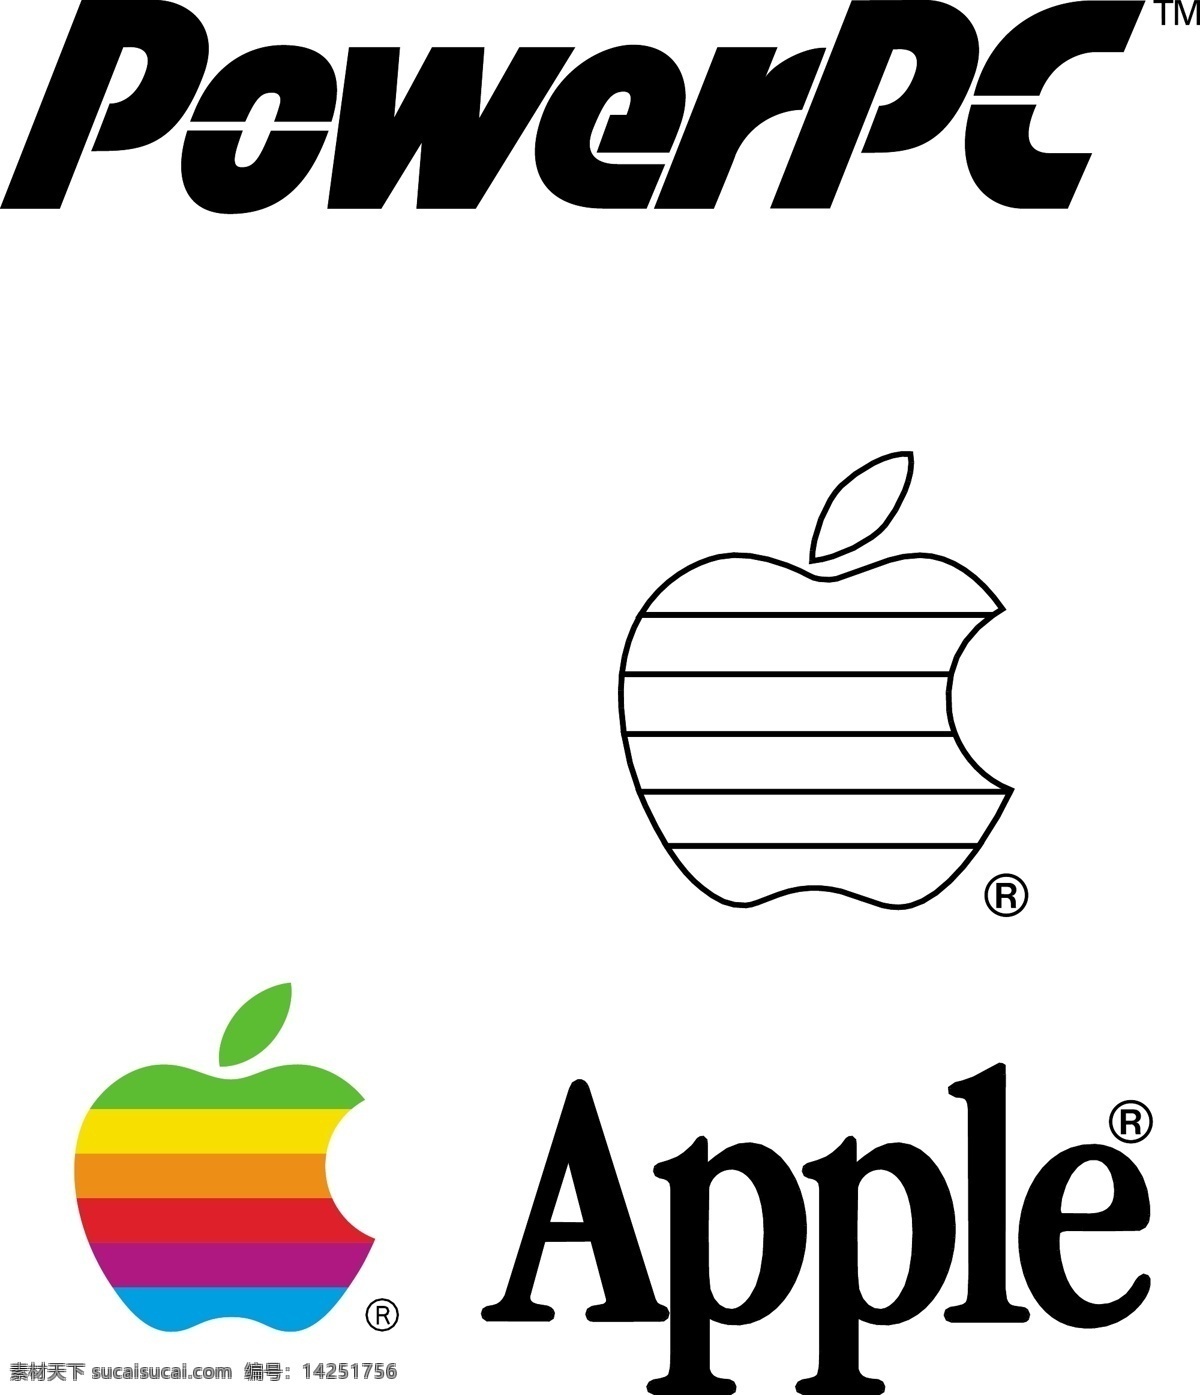 标志素材下载 苹果矢量 矢量素材 矢量图库 apple 苹果 彩色 标志 线 描图 模板 iphone4ai